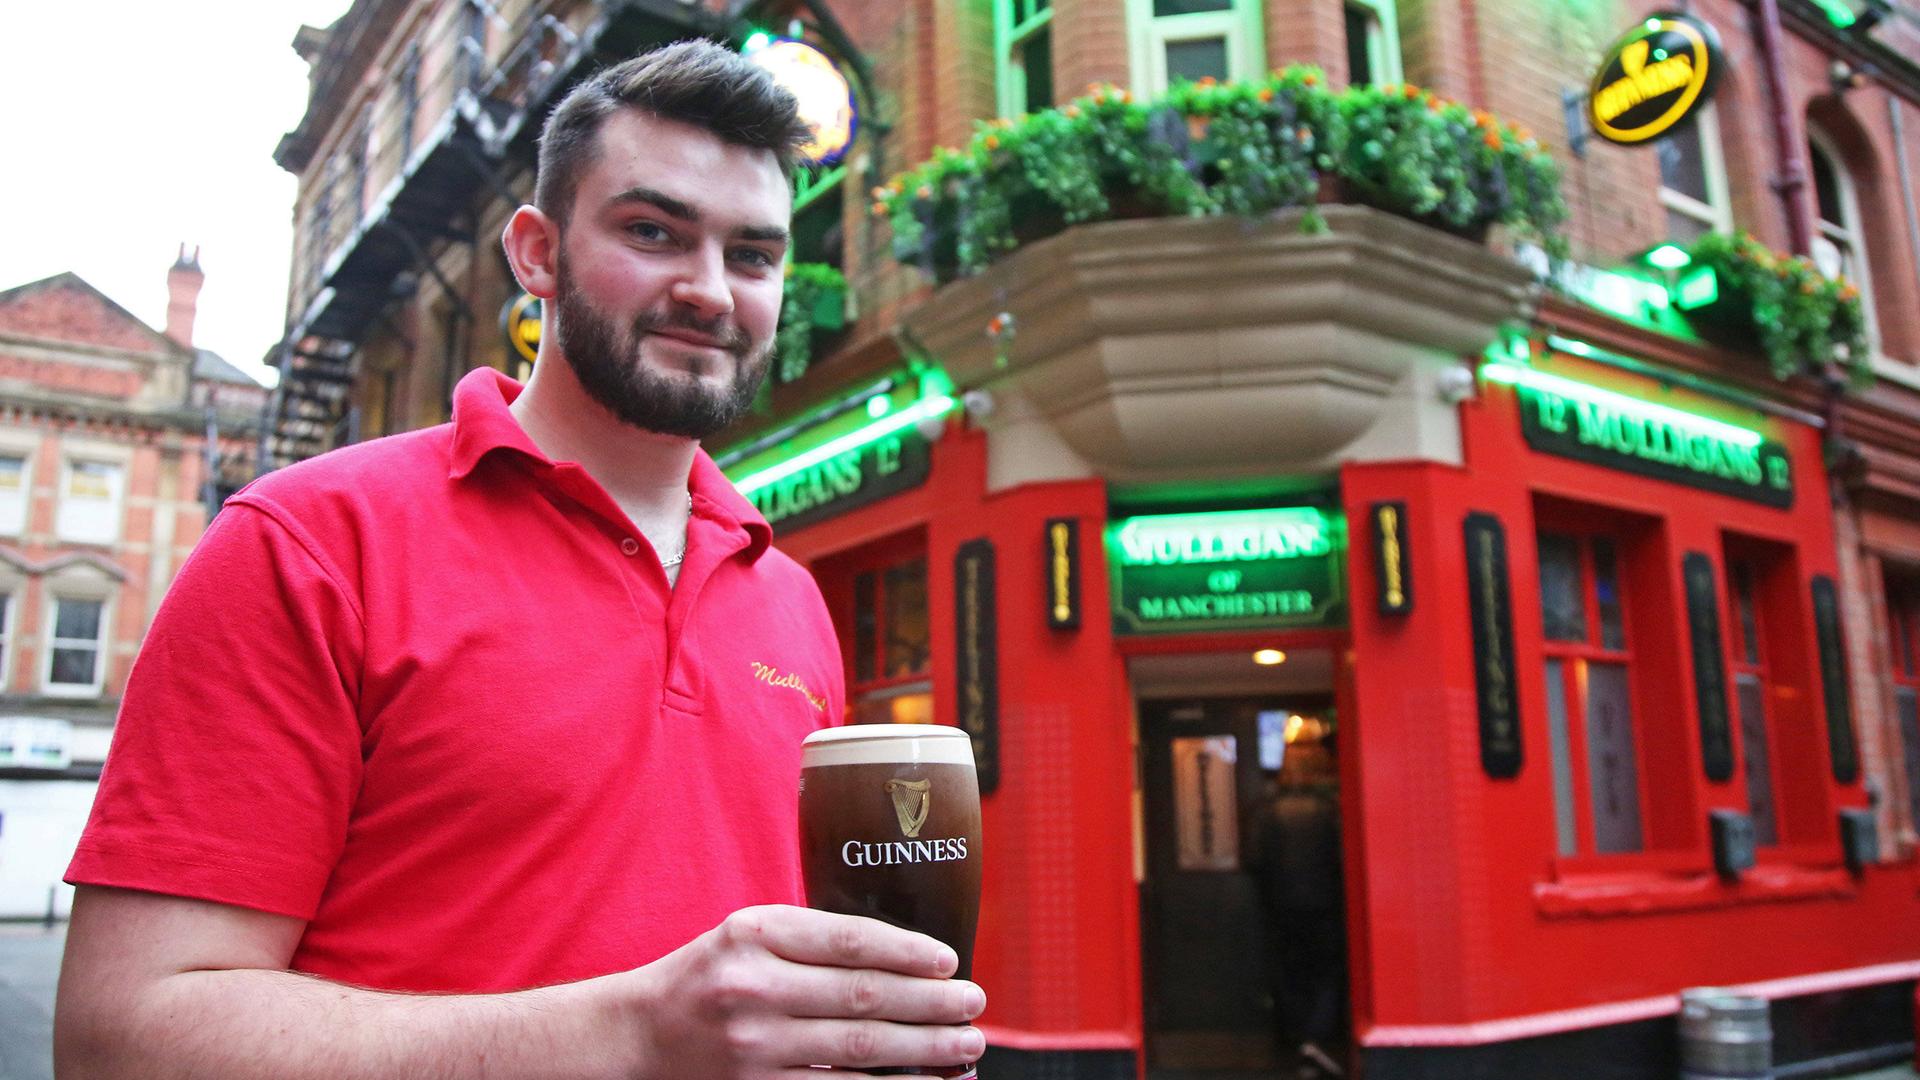 Der Mann mit schwarzem Bart und rotem Shirt steht mit dem Glas in der Hand vor der Bar mit roten Wänden und lächelt in die Kamera.